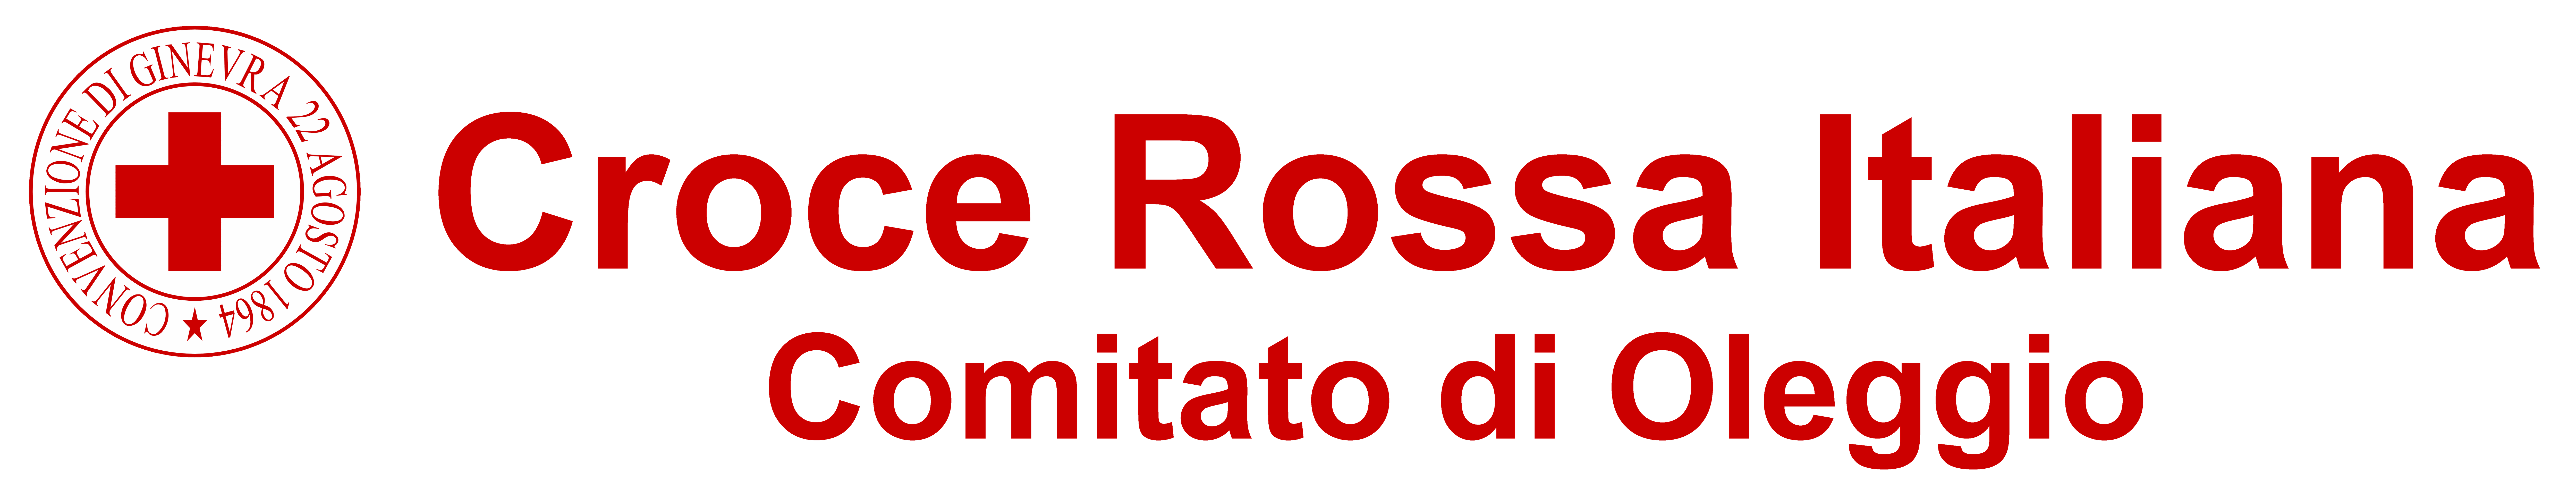 Croce Rossa Italiana - Comitato di Oleggio